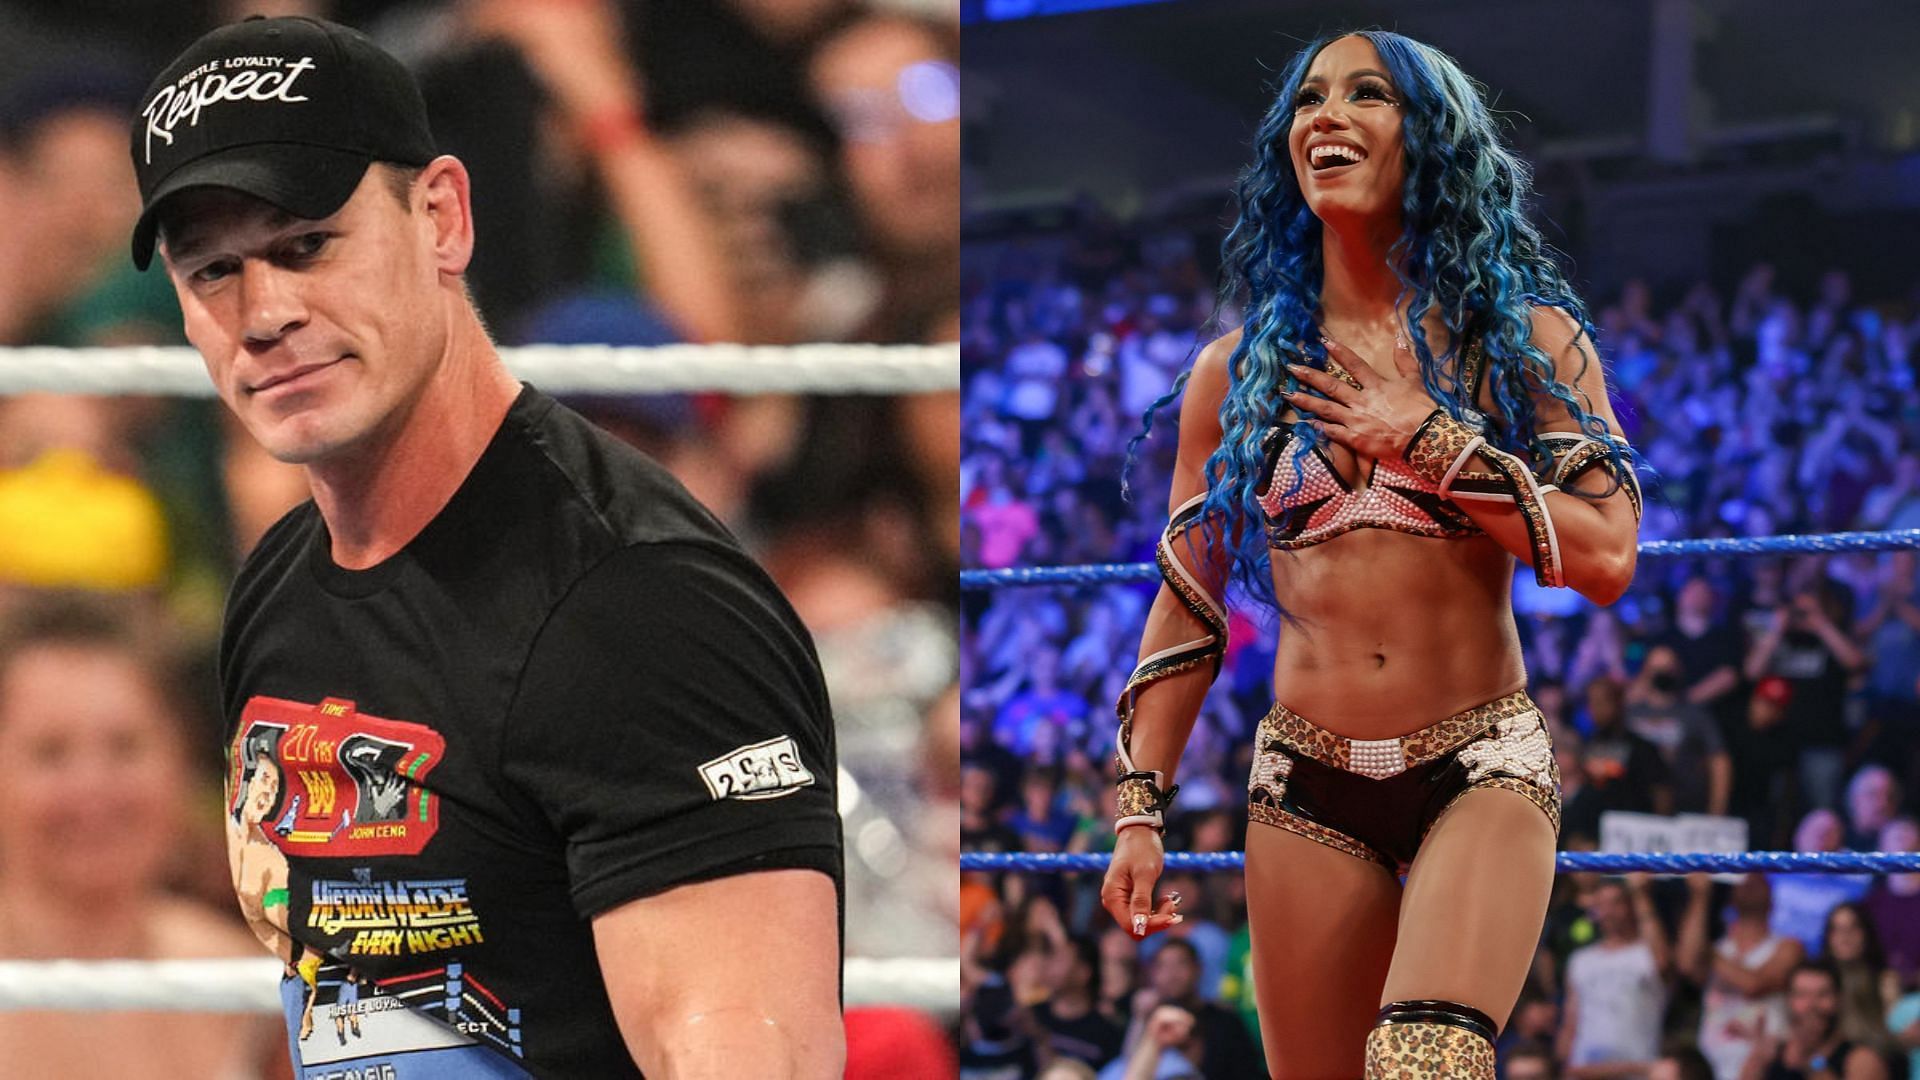 John Cena (left); Sasha Banks (right)